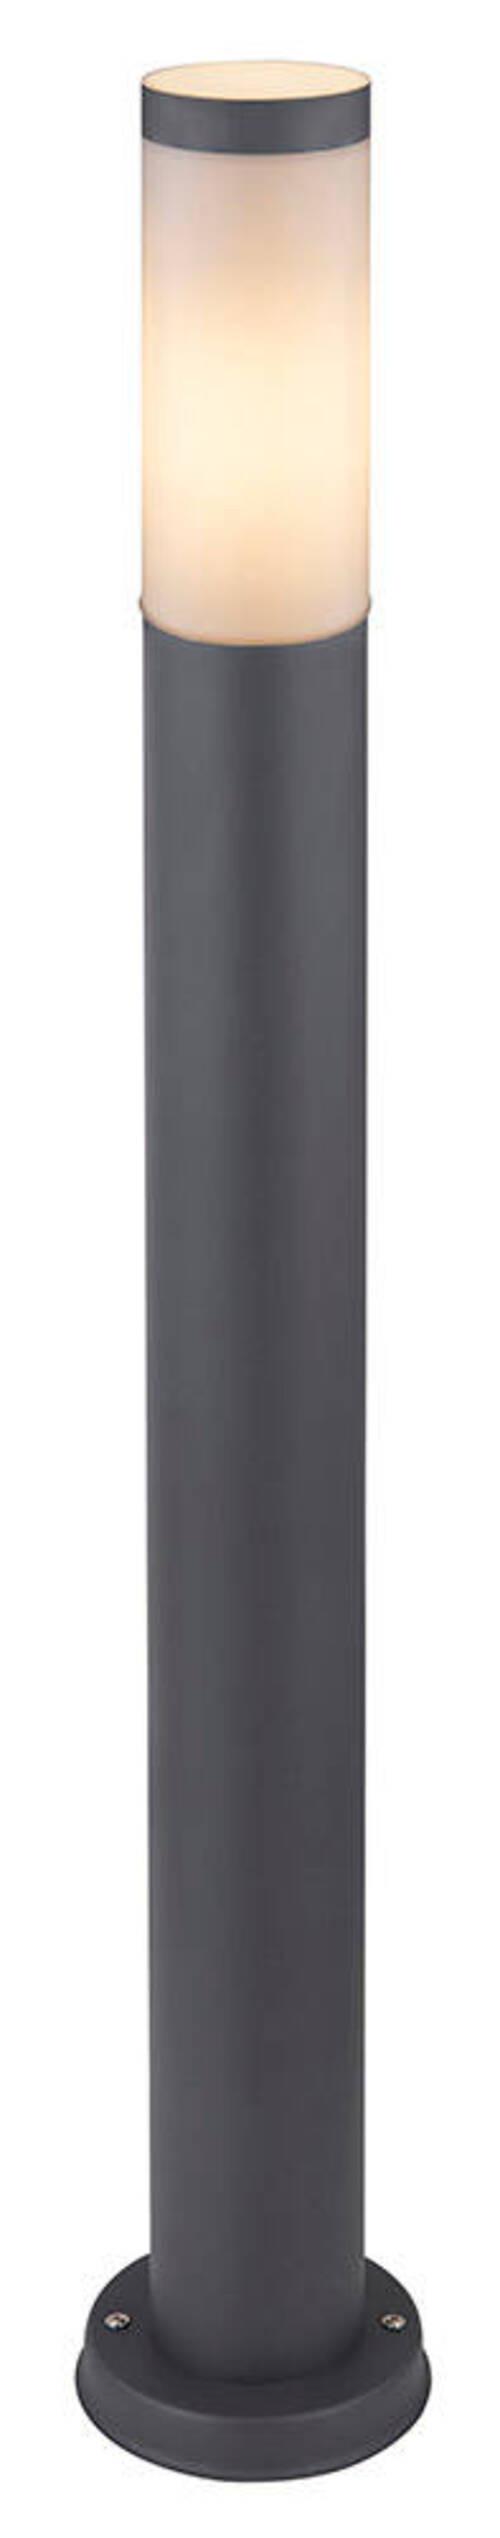 Vonkajšie Svietidlo Boston Antracitová Max. 60 Watt - opálová/antracitová, Basics, kov/plast (12,7/80cm)